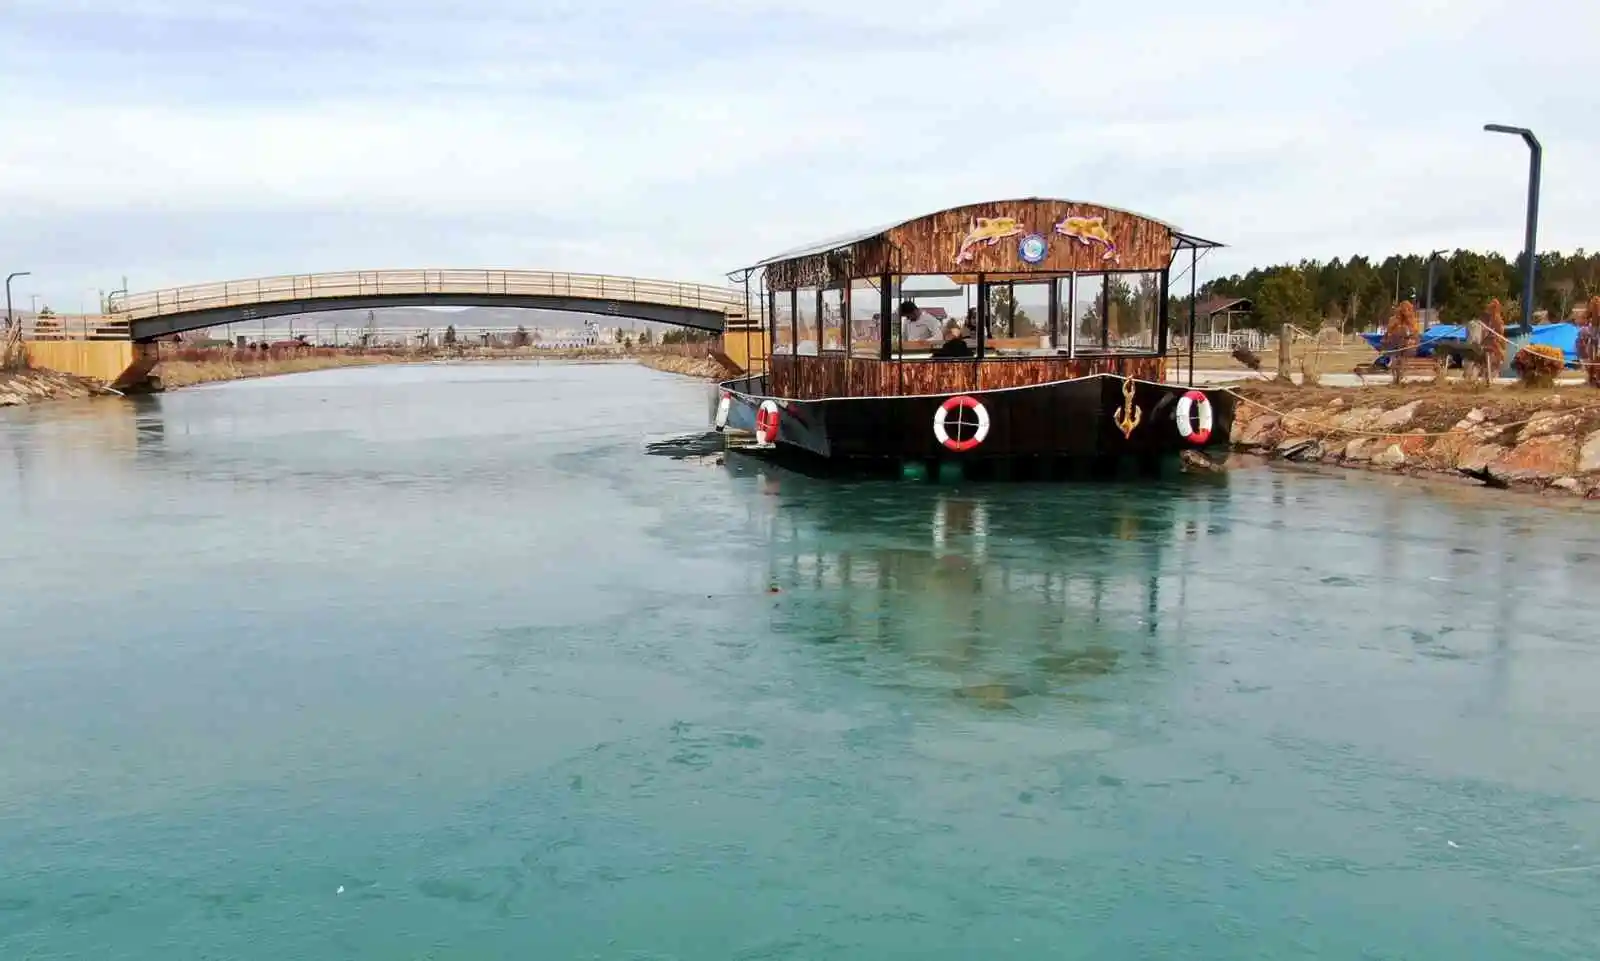 Denize kıyısı olmayan Sivas’ta teknede balık ekmek keyfi yaşanıyor
